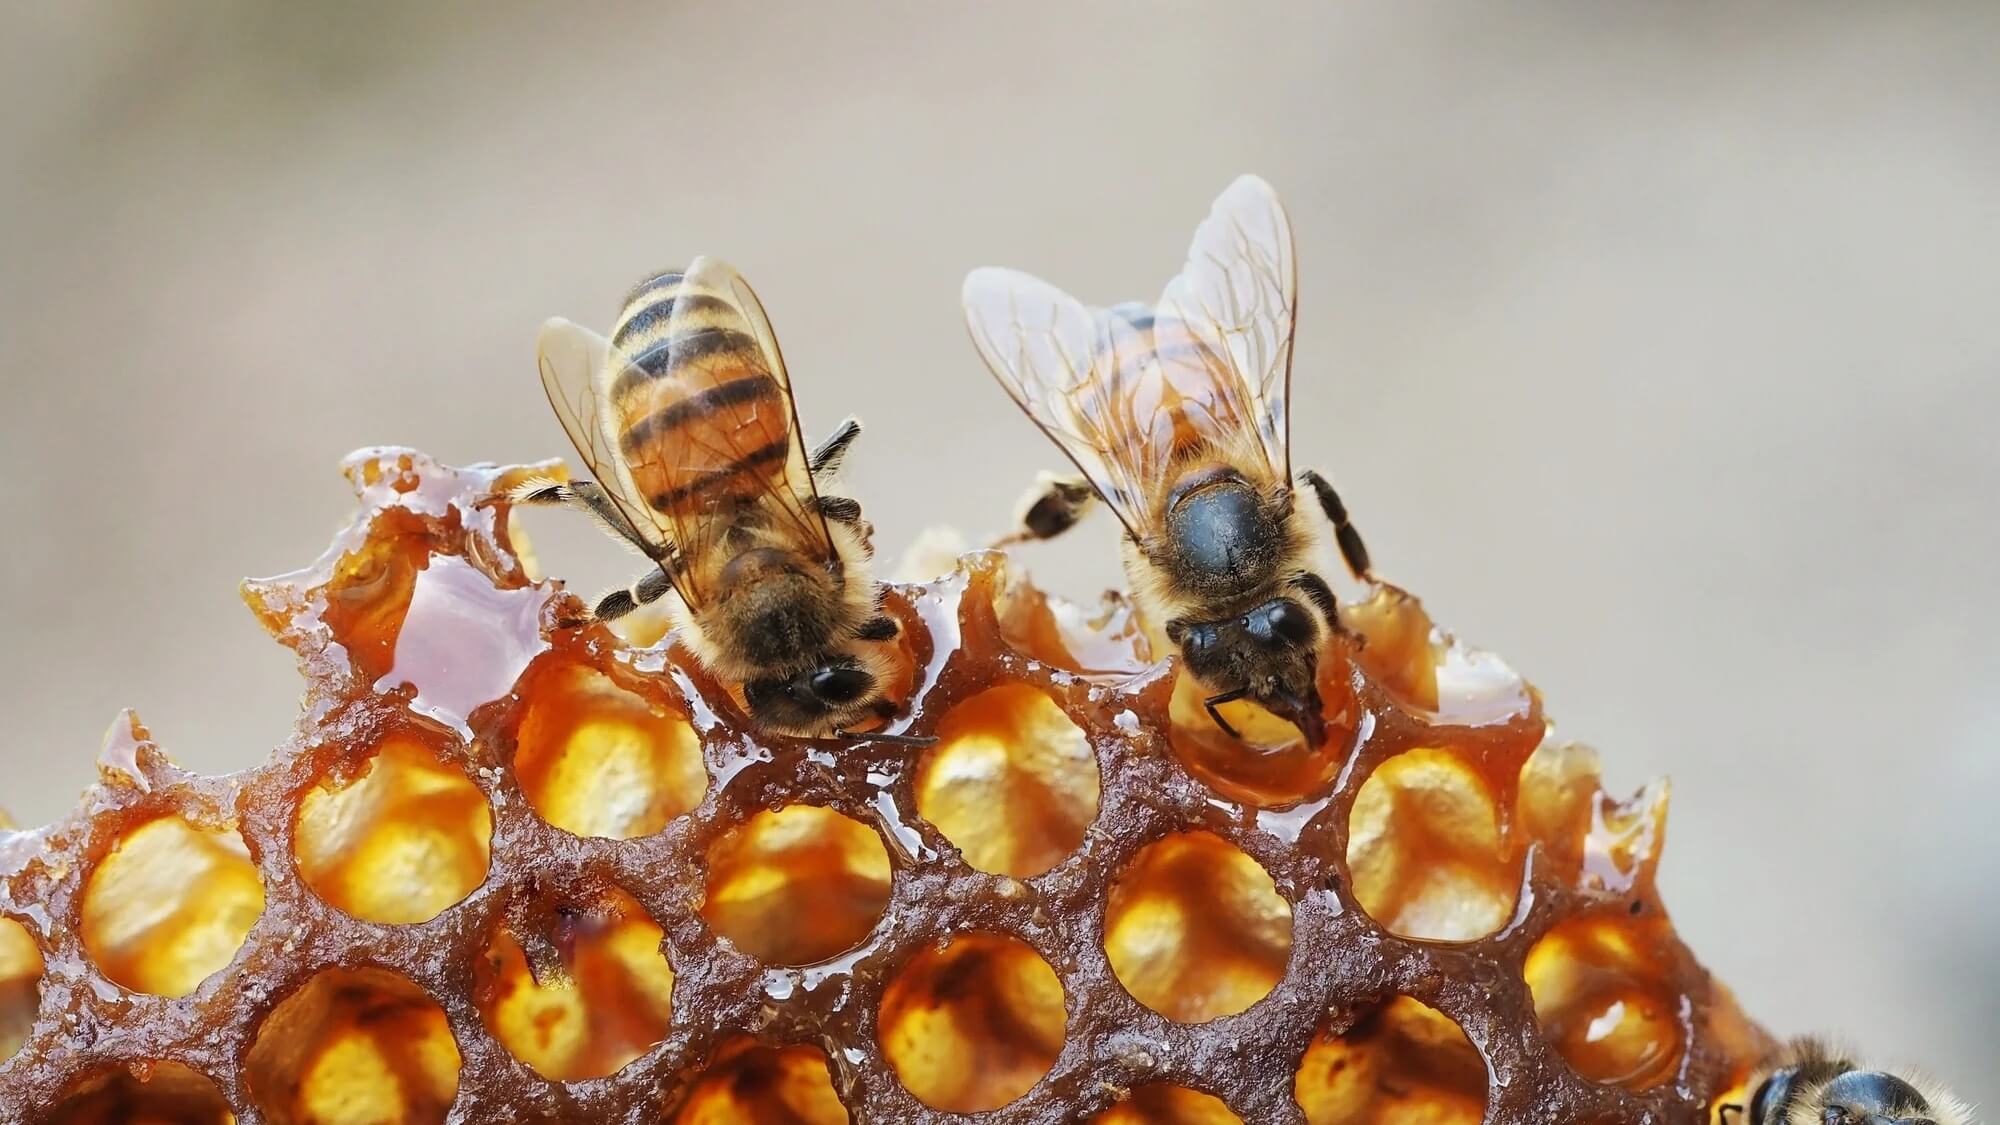 Появление новой породы медоносных пчел вызывает оптимизм в борьбе с главной угрозой коммерческим пчелам